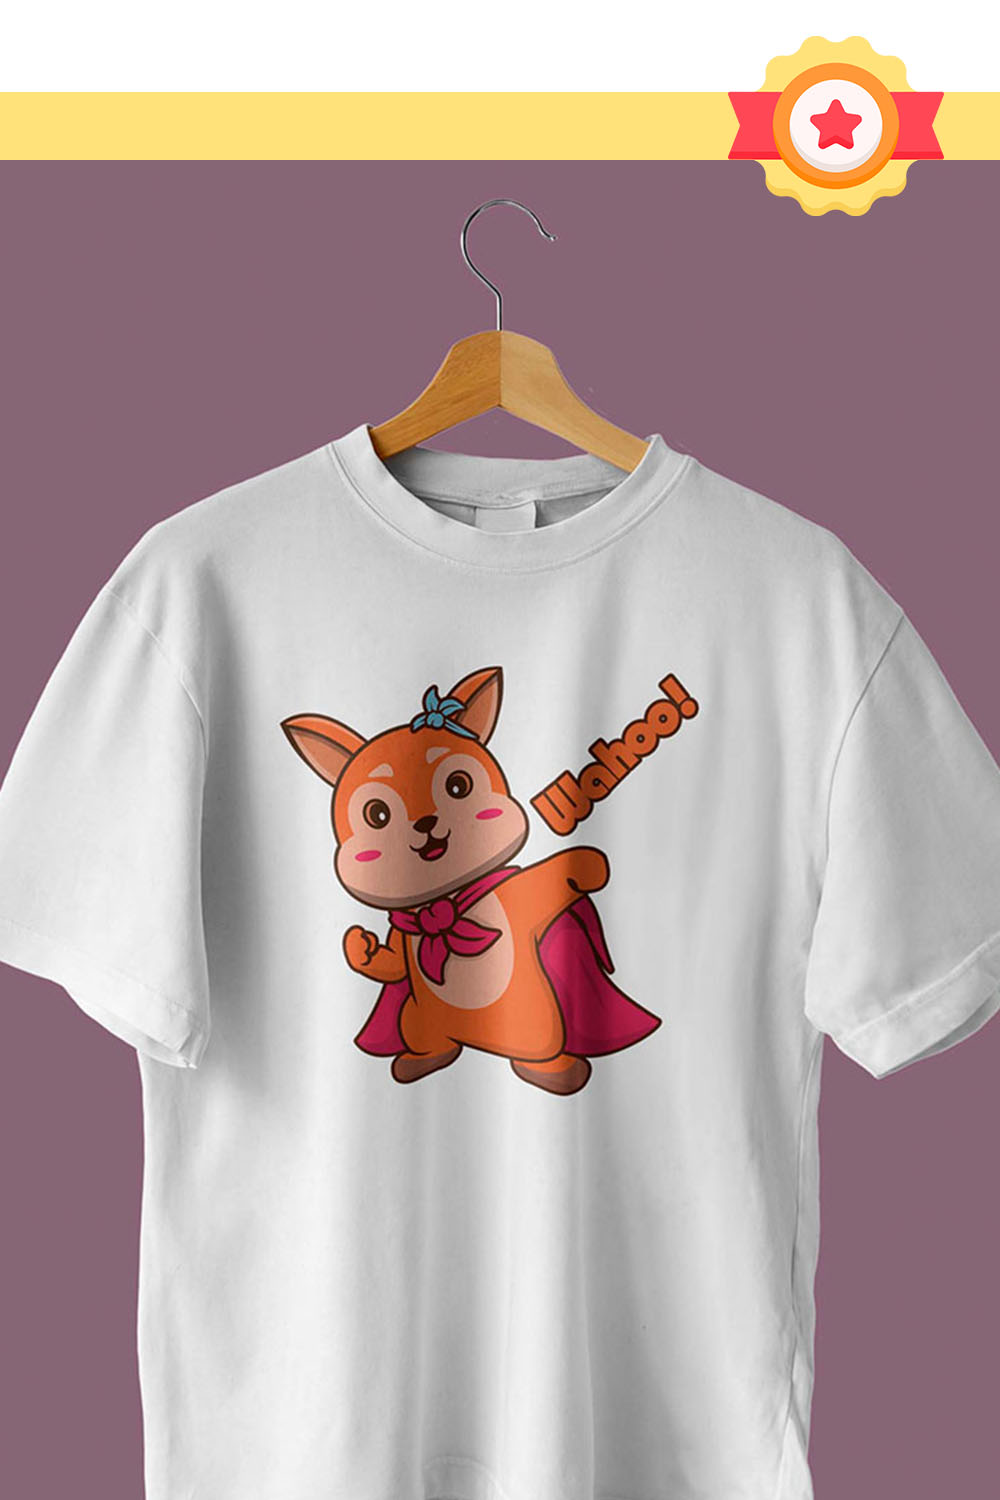 Squirrel Emotions Illustration T-Shirt Design Pinterest image.